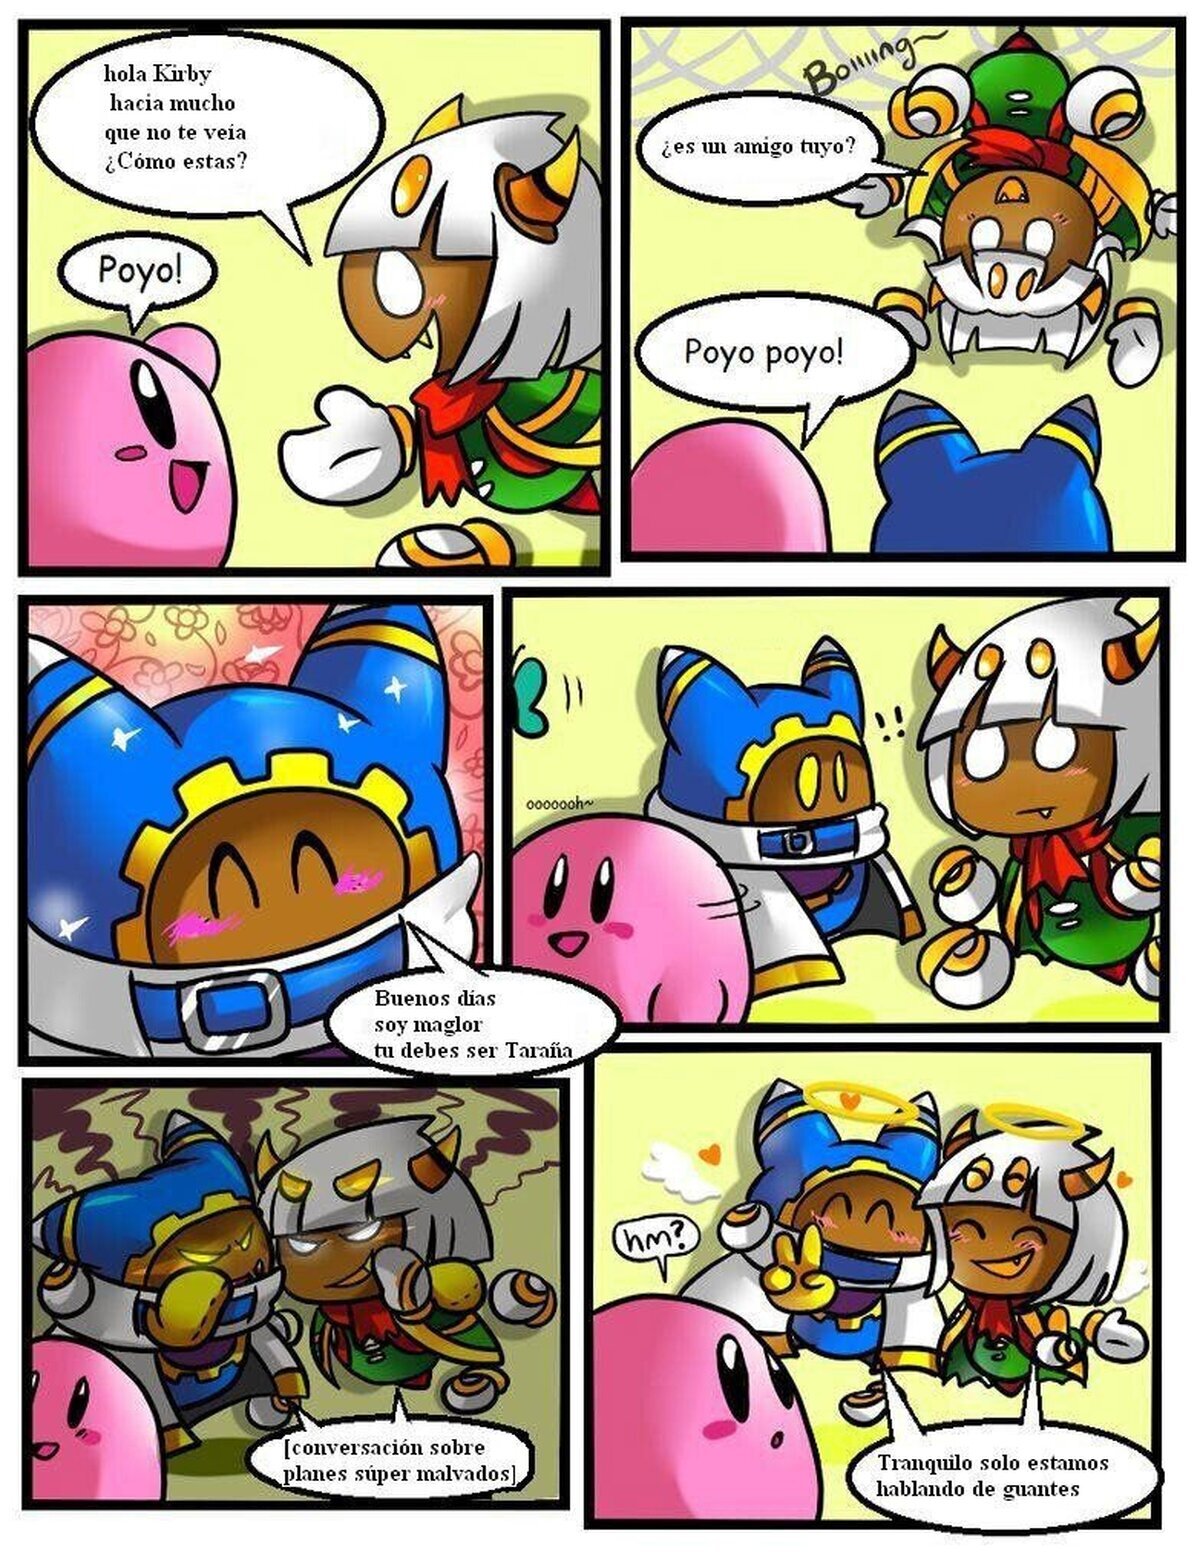 Creo que tendrías que escoger mejor a tus amigos, Kirby